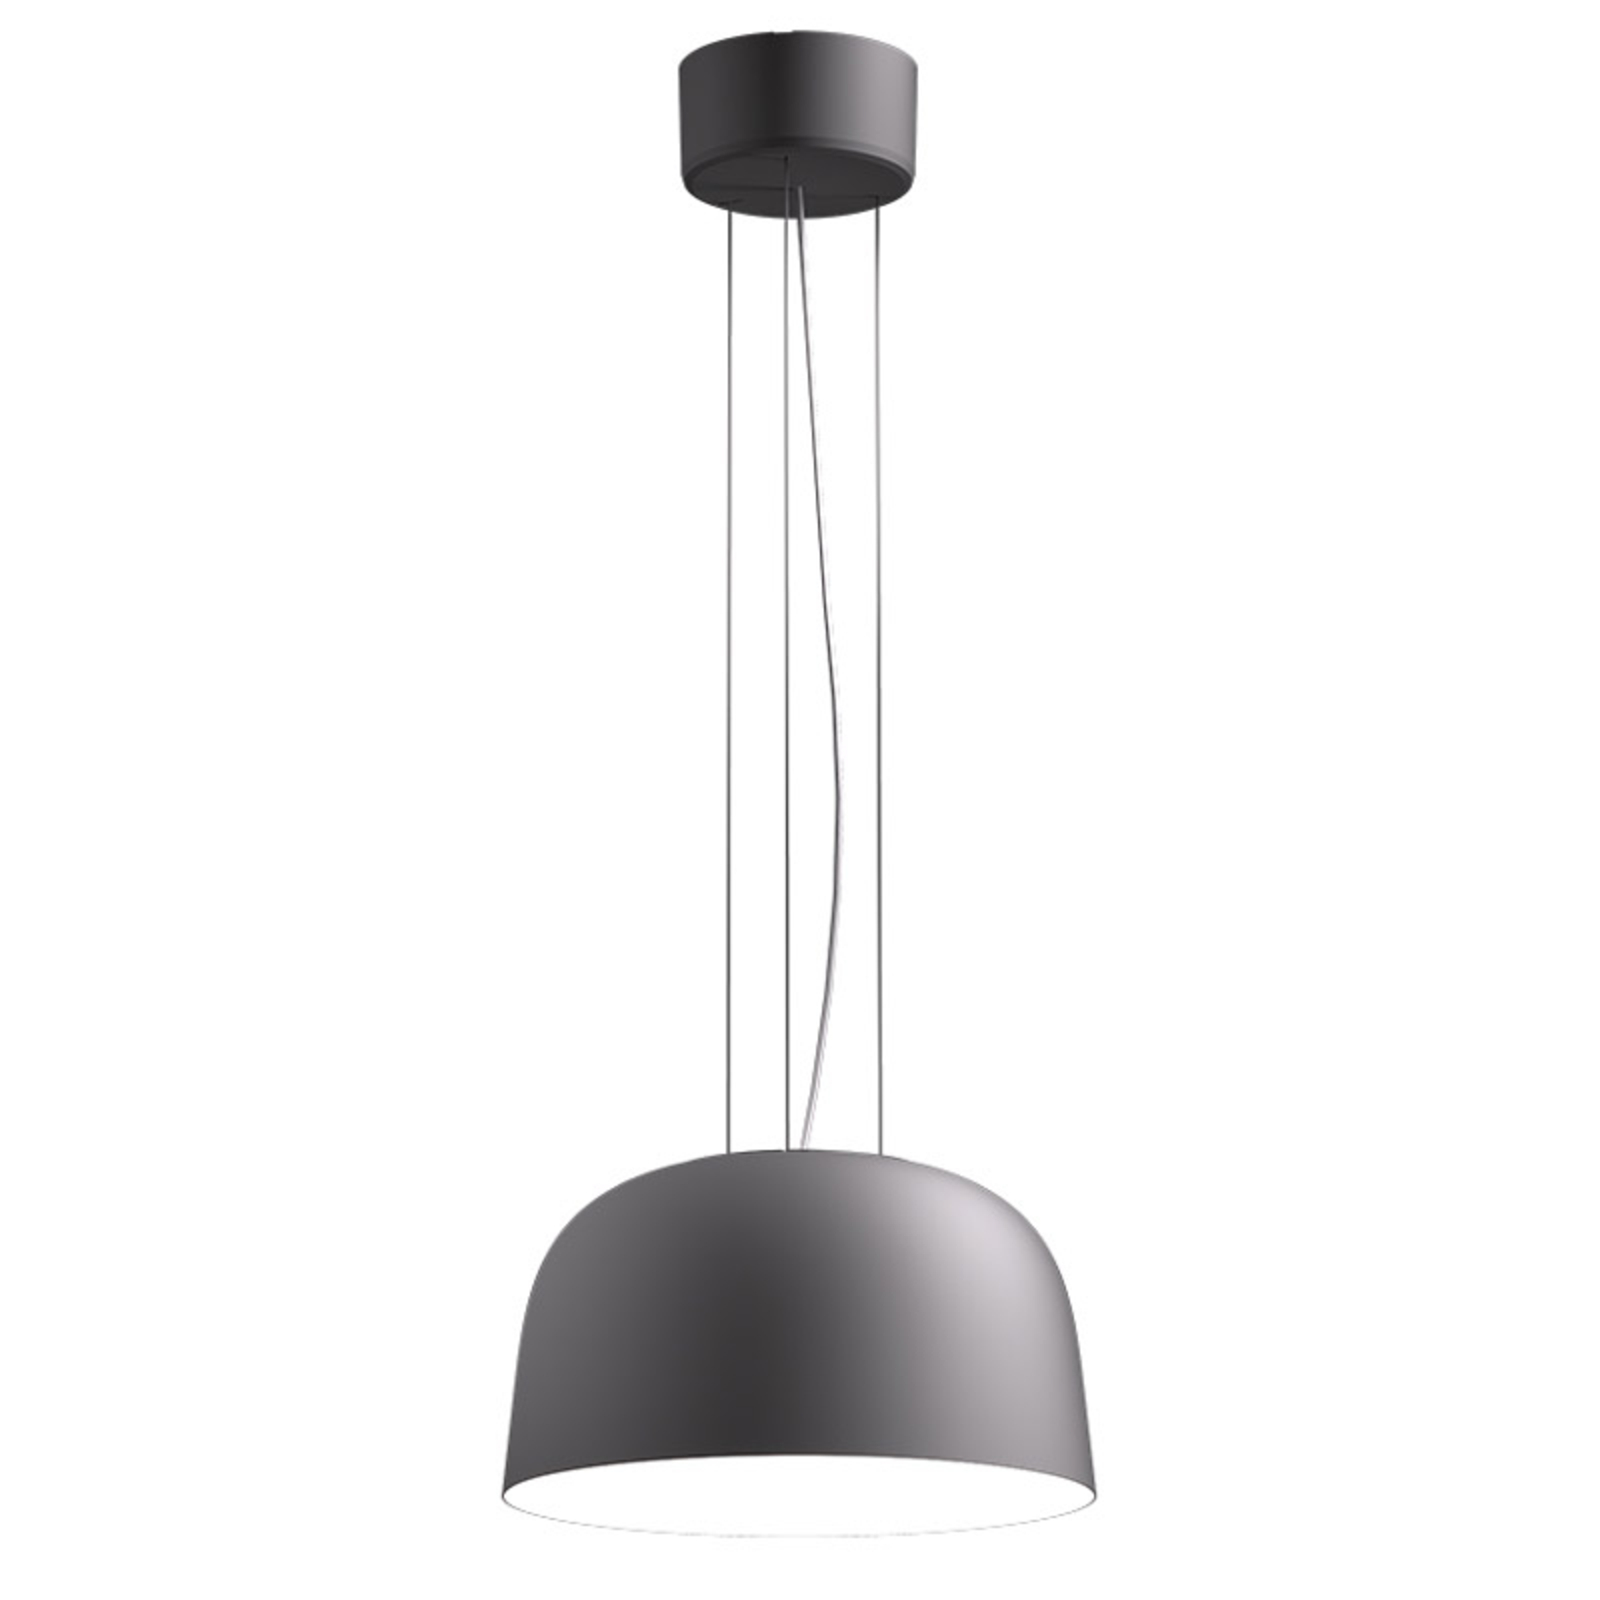 LED pakabinamas šviestuvas Sva 840 Dali Ø 35,6cm sidabriškai pilkos spalvos